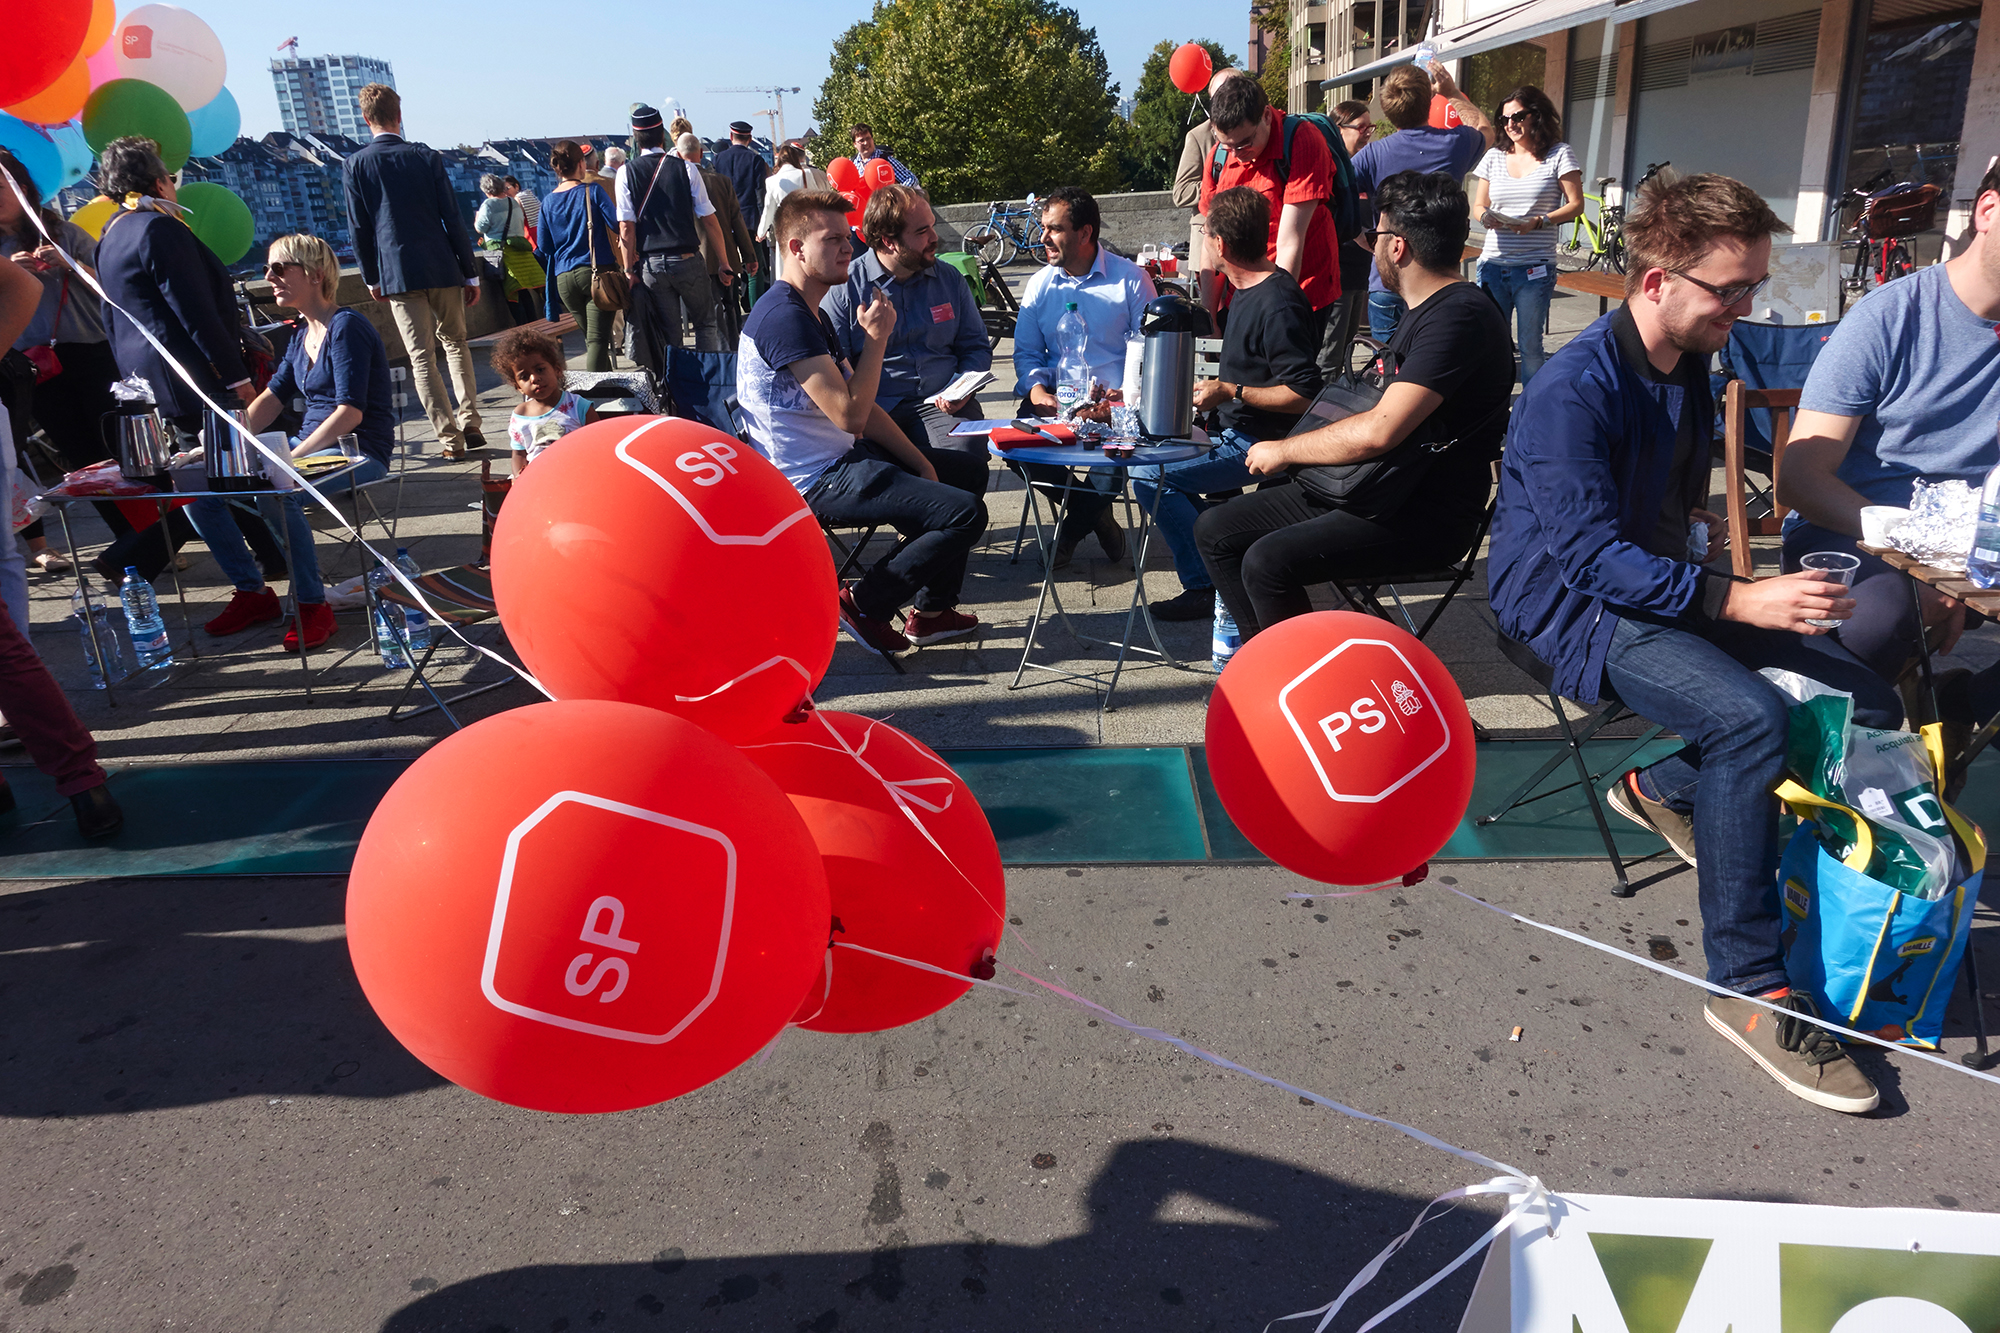 Angriffig: Strassenwahlkampf der SP mit Ballons